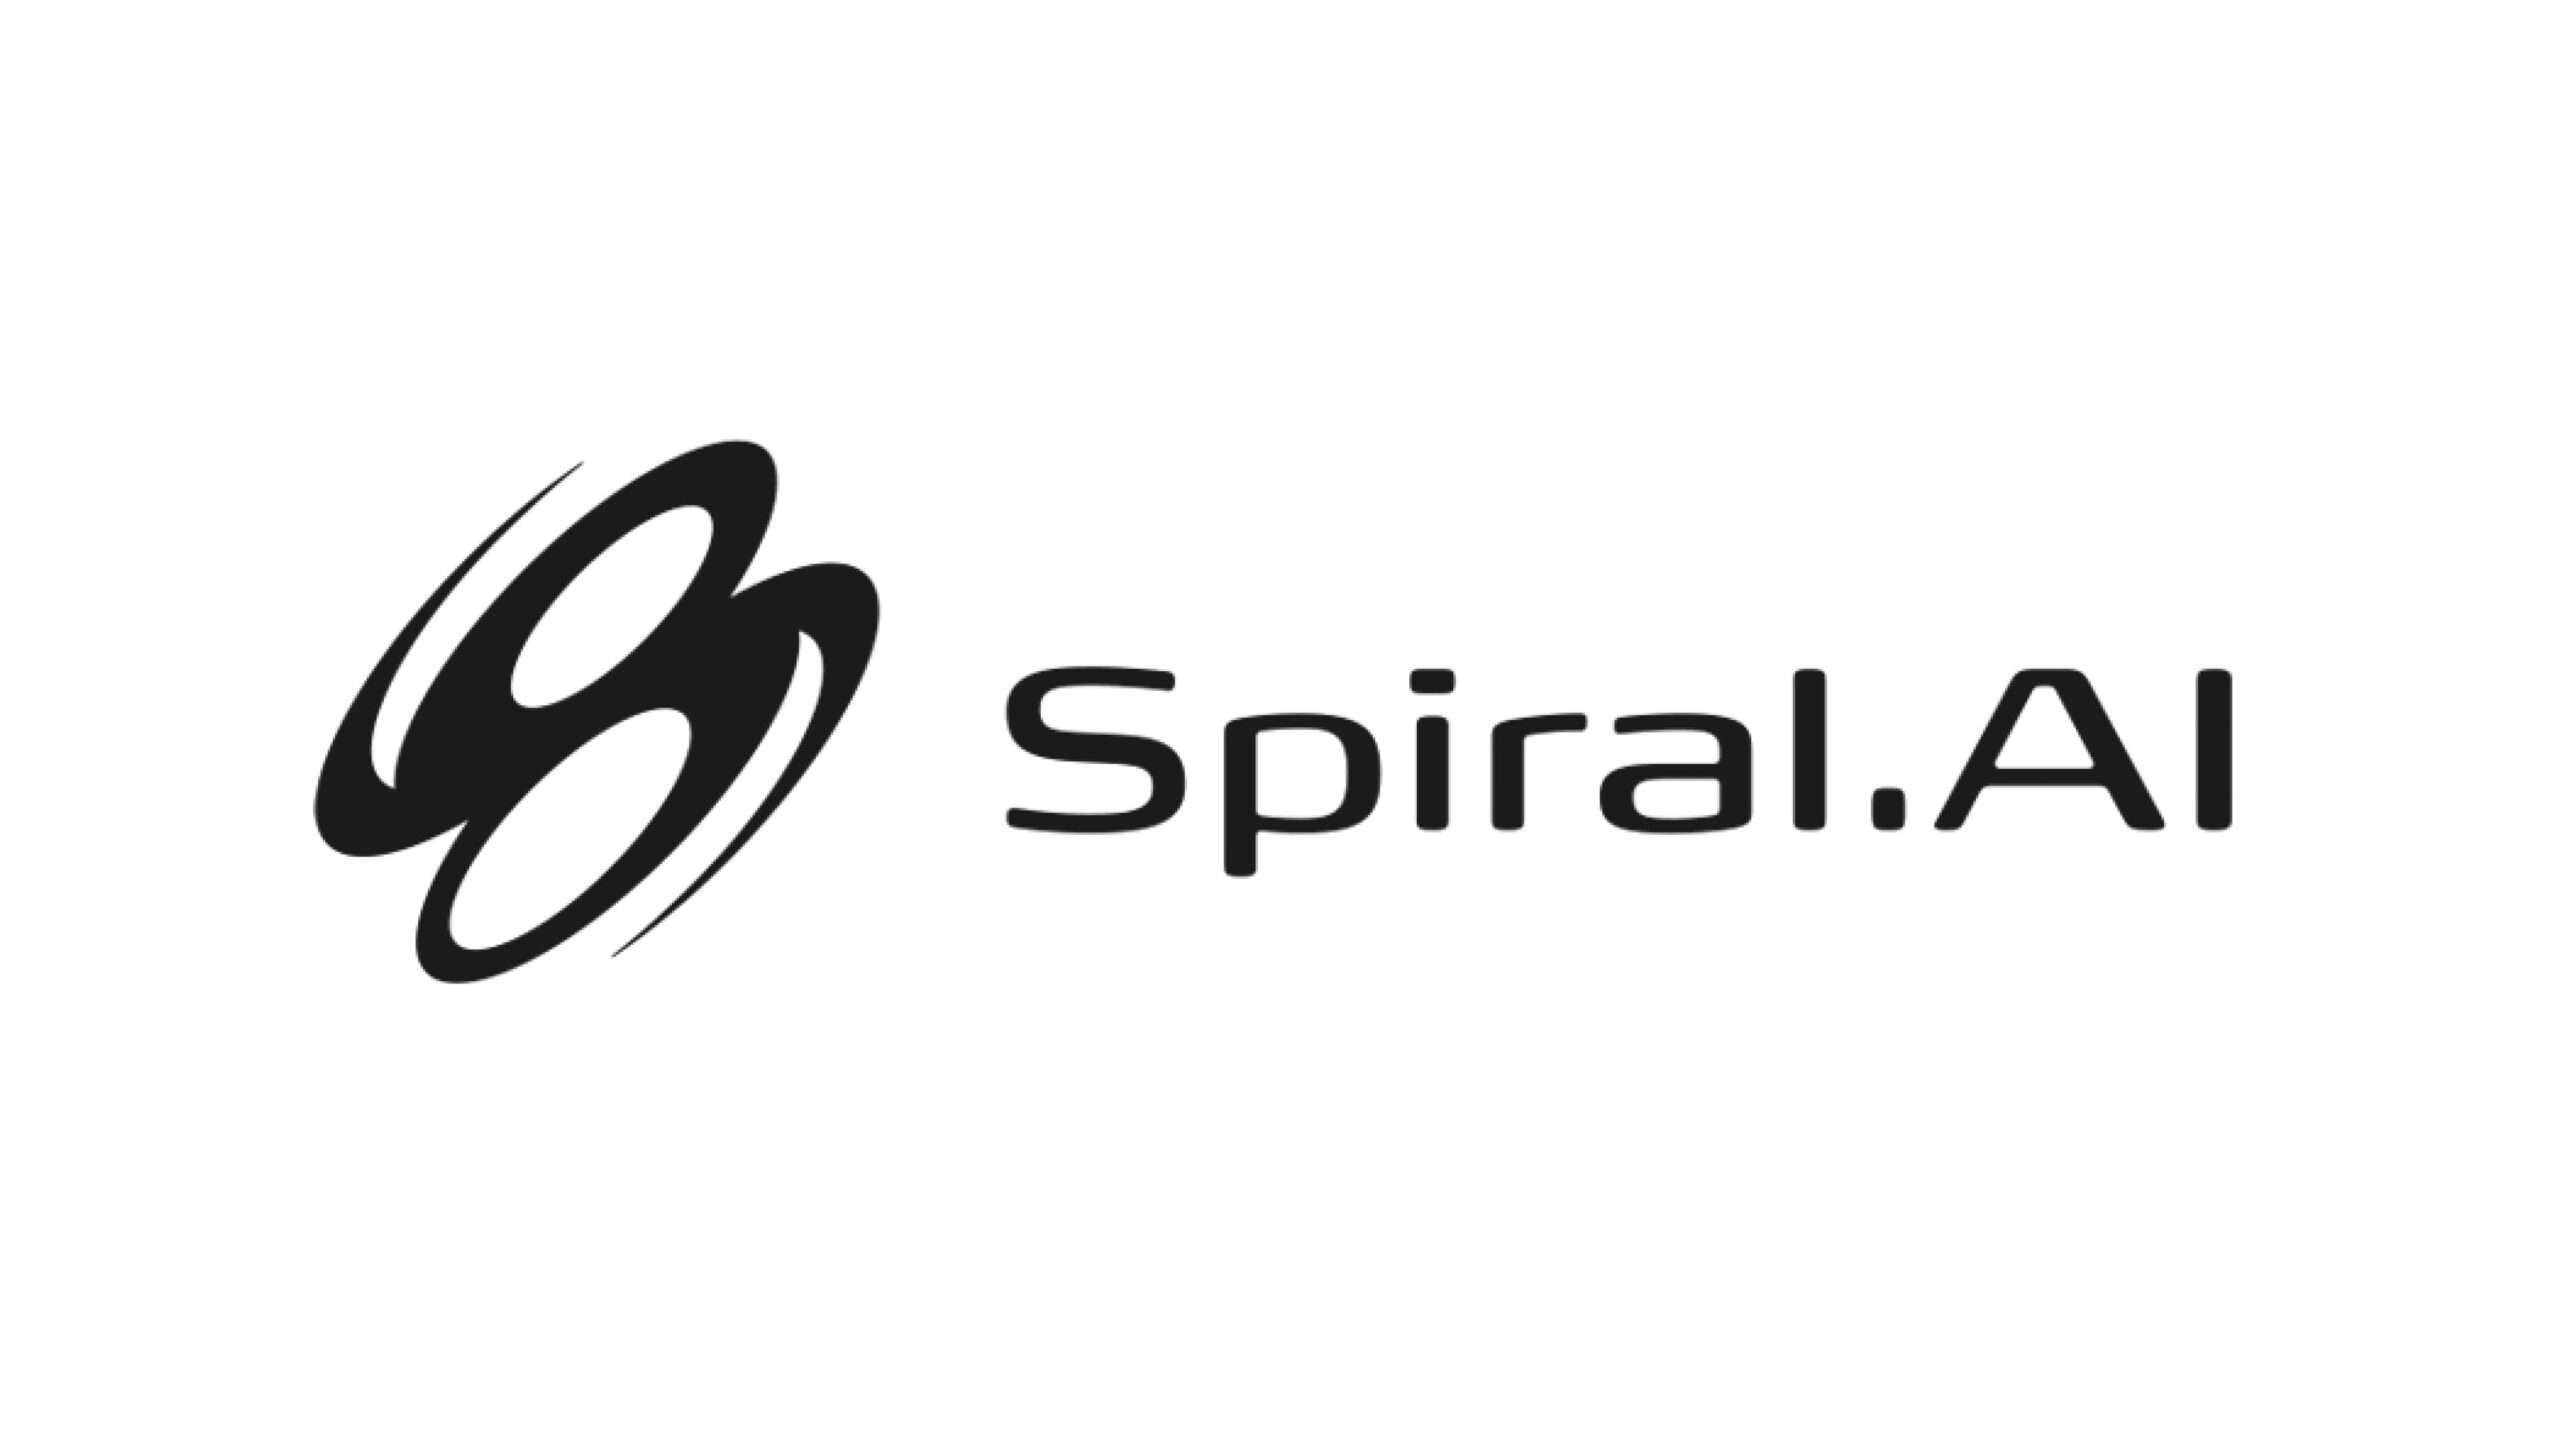 Spiral.AI株式会社、シードラウンドにて8.3億円の資金調達を実施